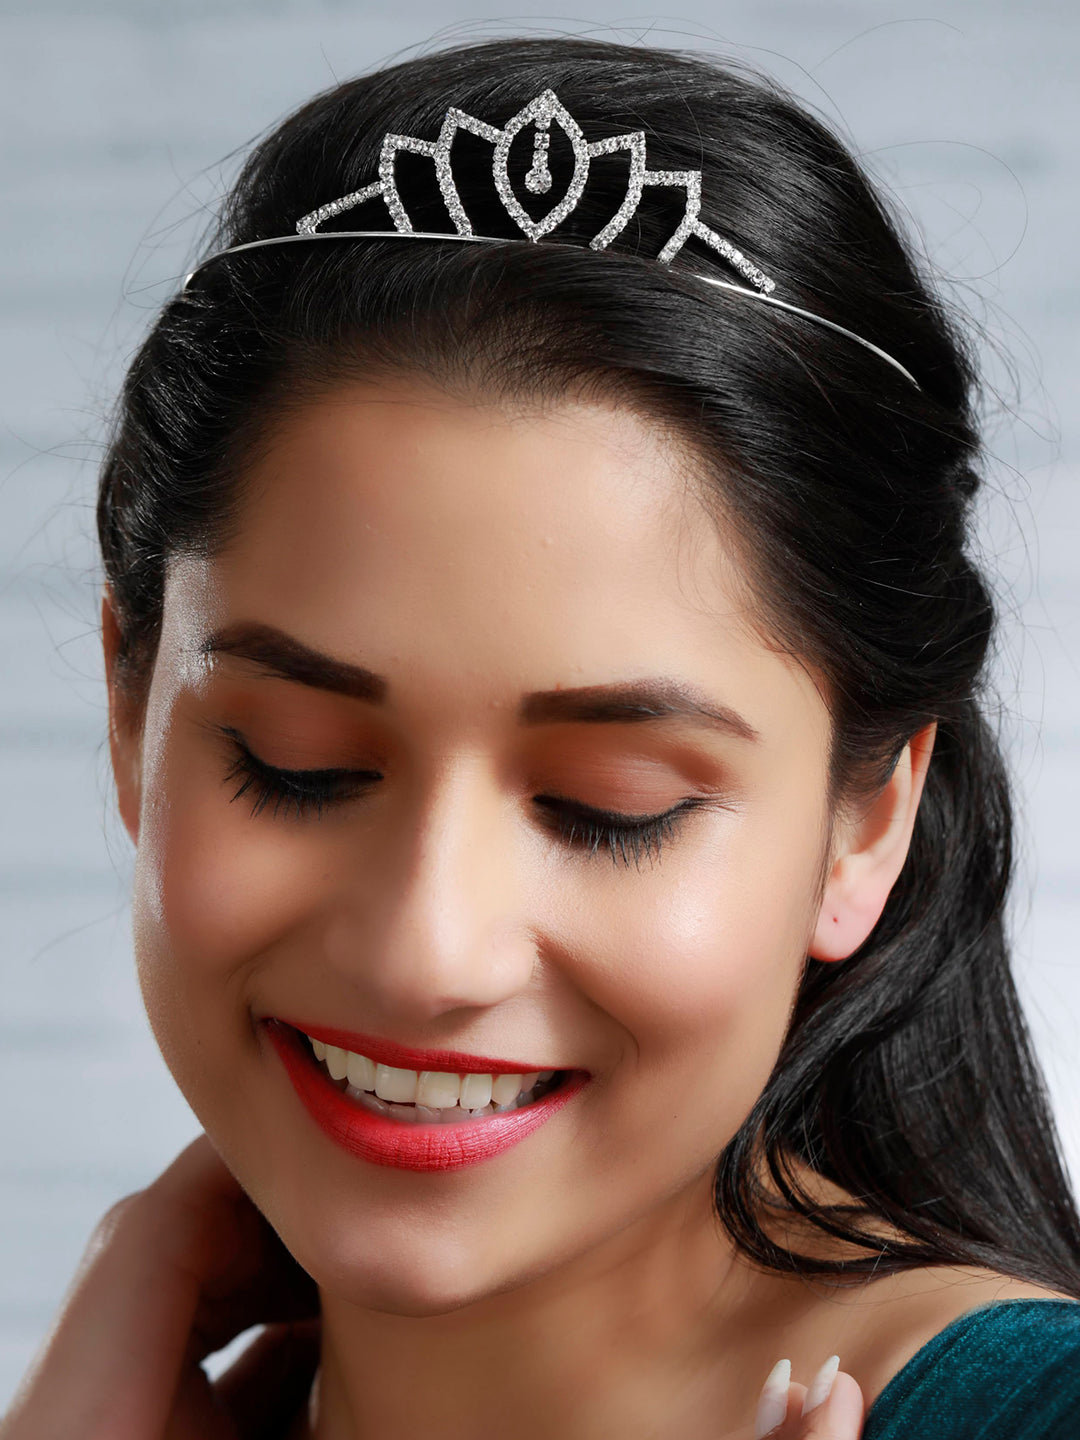 Silver Stone Embellished Princess Tiara Crown Hair Band